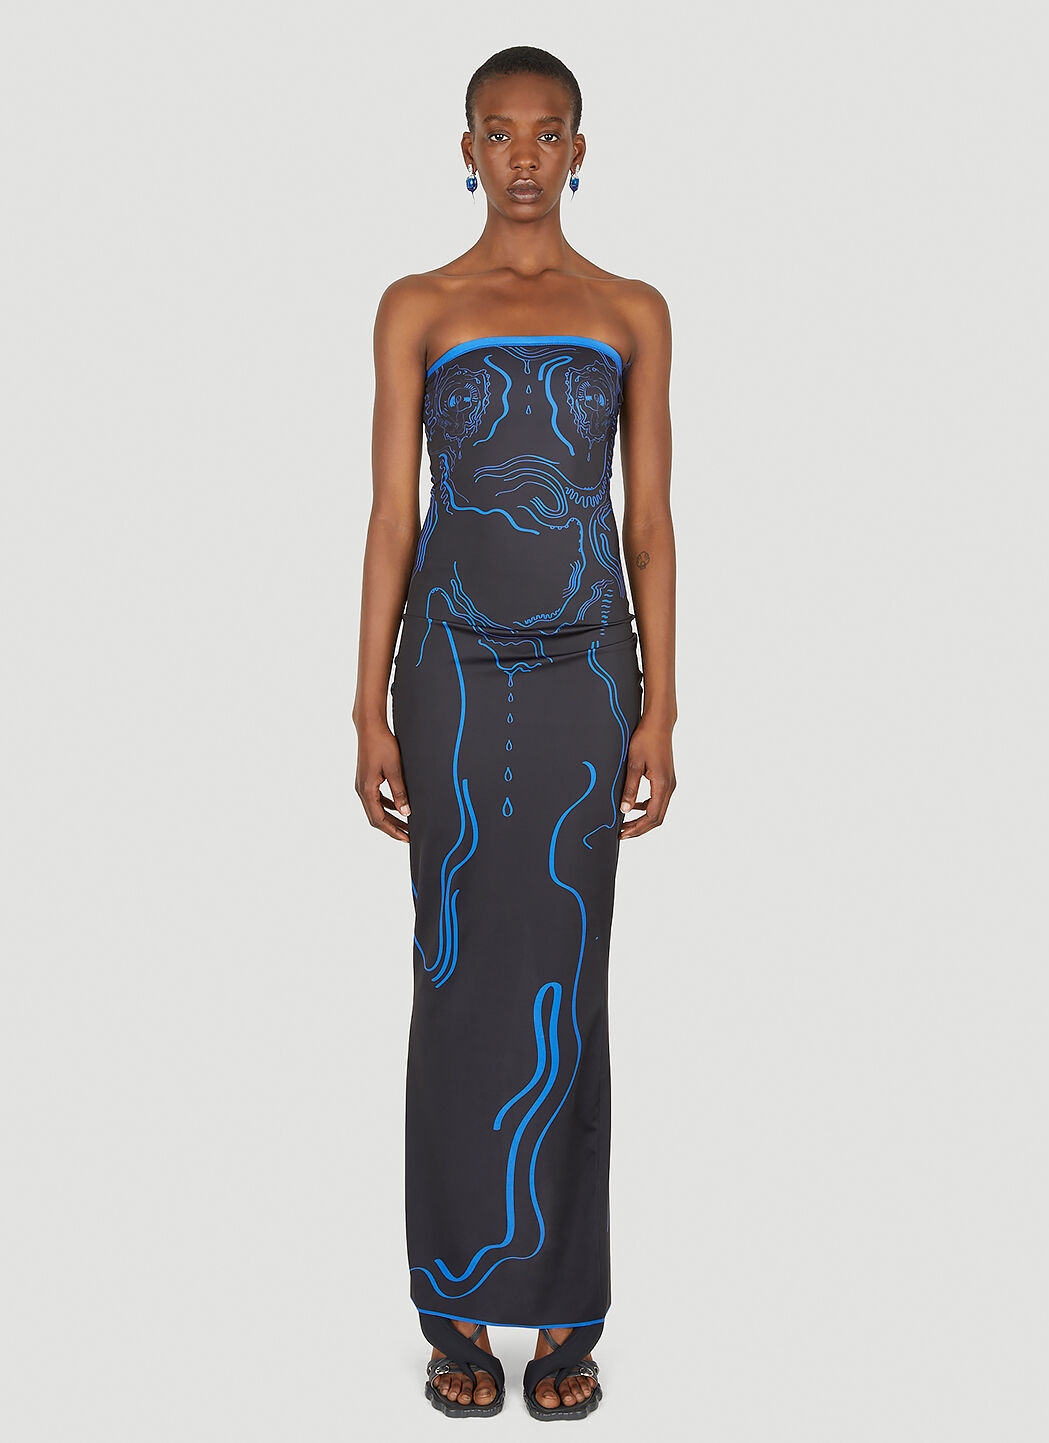 DI PETSA Venus Shell Maxi Dress Black dip0254001